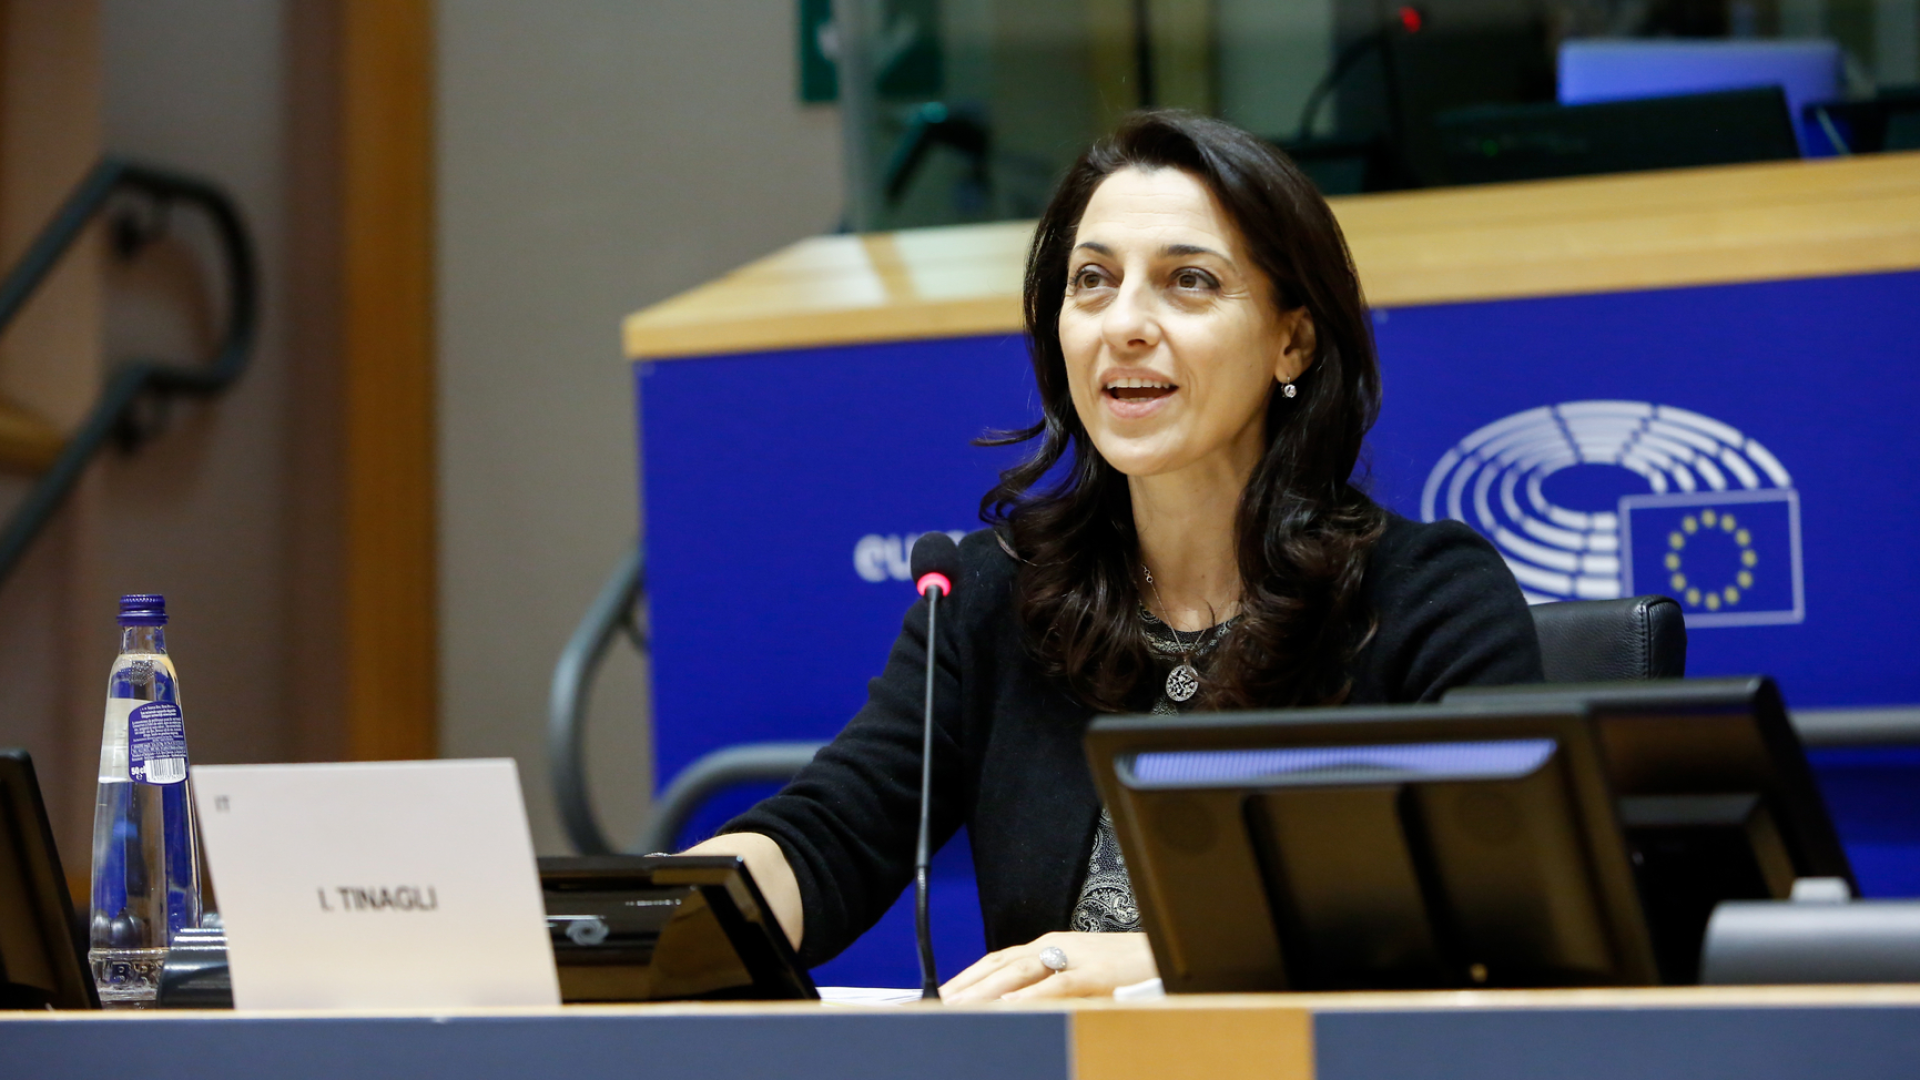 Irene Tinagli, Vorsitzende des Wirtschafts- und Währungsausschusses des EU-Parlaments. | Foto: Europäische Union